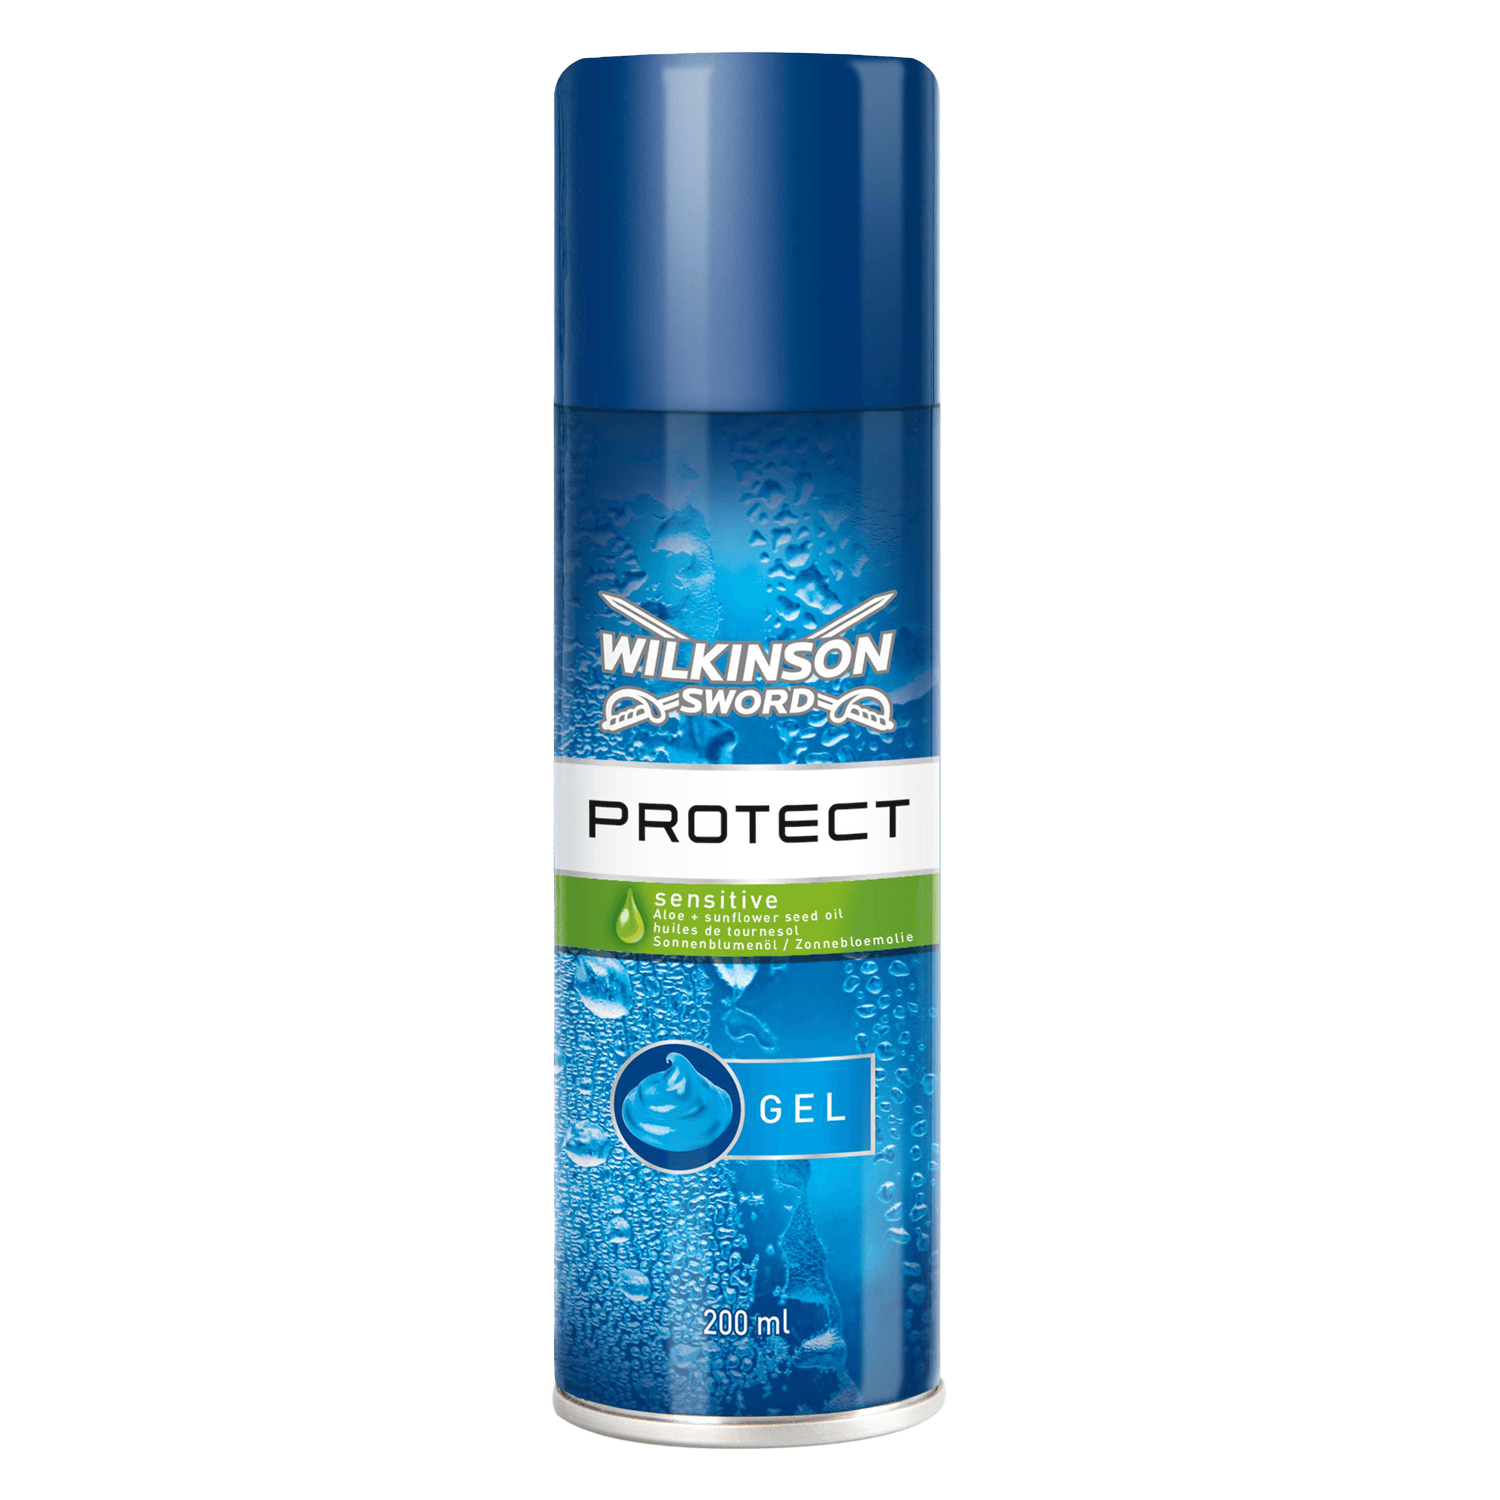 Protect - Rasiergel für Empfindliche Haut